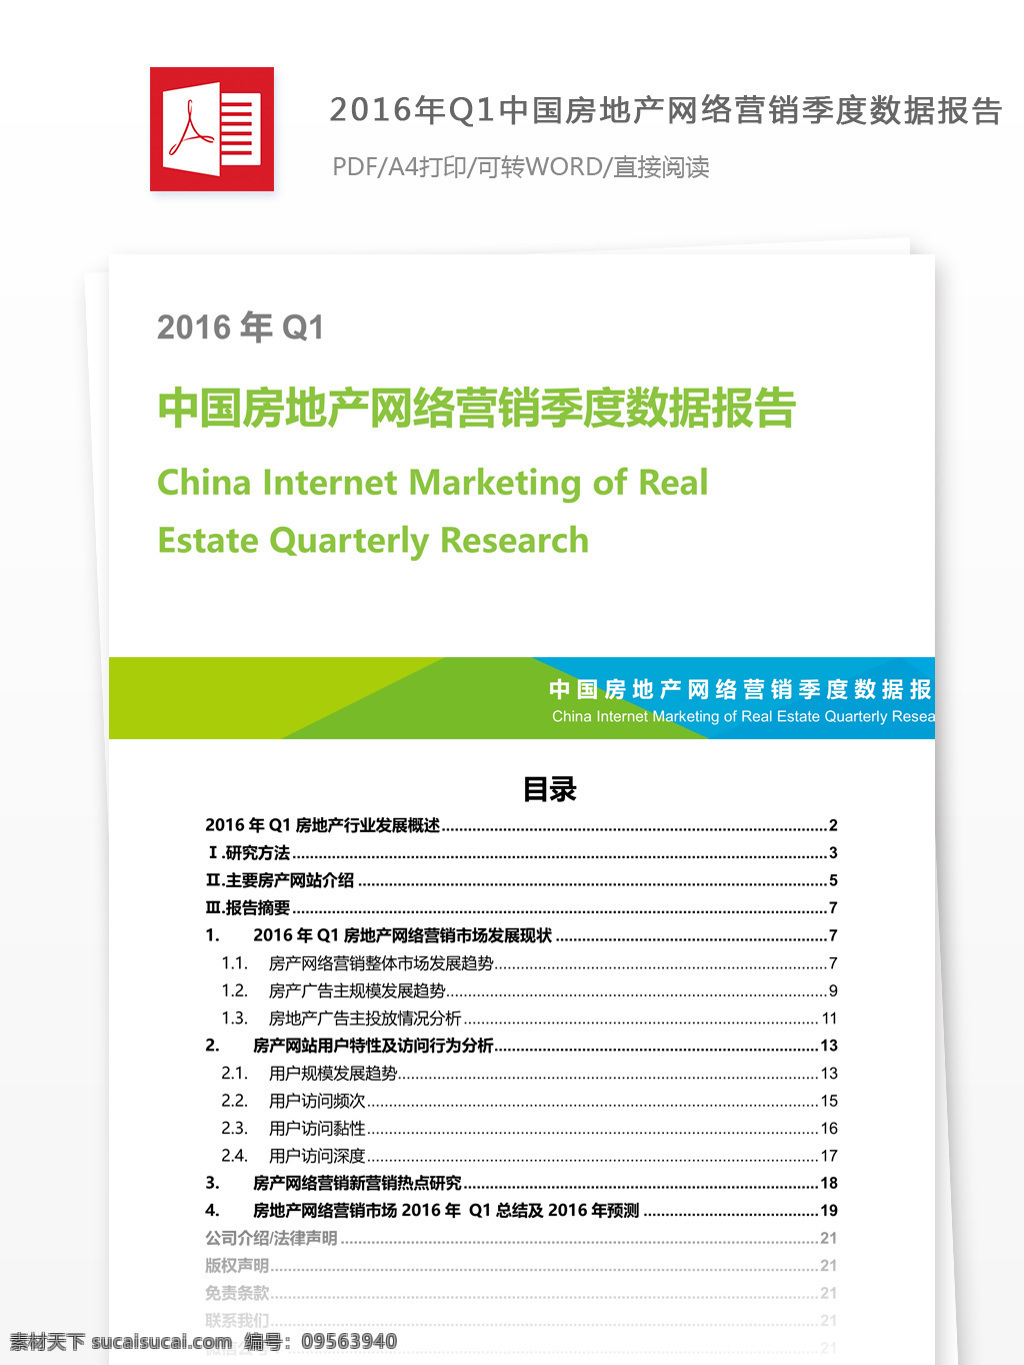 q1 中国 房地产 网络营销 季度 数据 报告 行业分析报告 数据报告 商业报告模板 研究报告